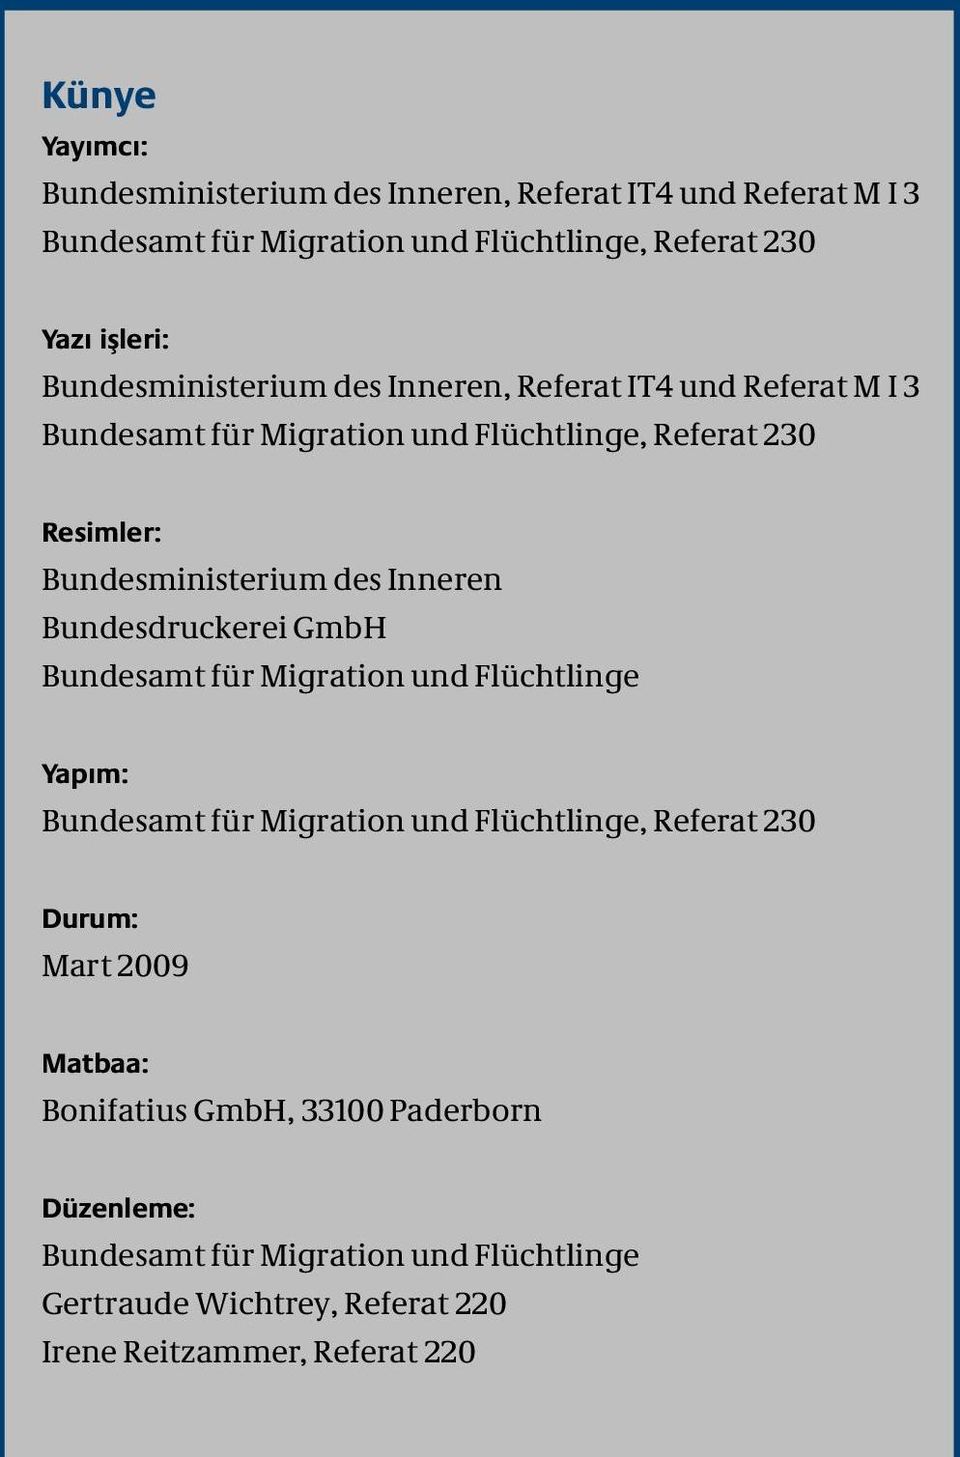 Inneren Bundesdruckerei GmbH Bundesamt für Migration und Flüchtlinge Yapım: Bundesamt für Migration und Flüchtlinge, Referat 230 Durum: Mart 2009